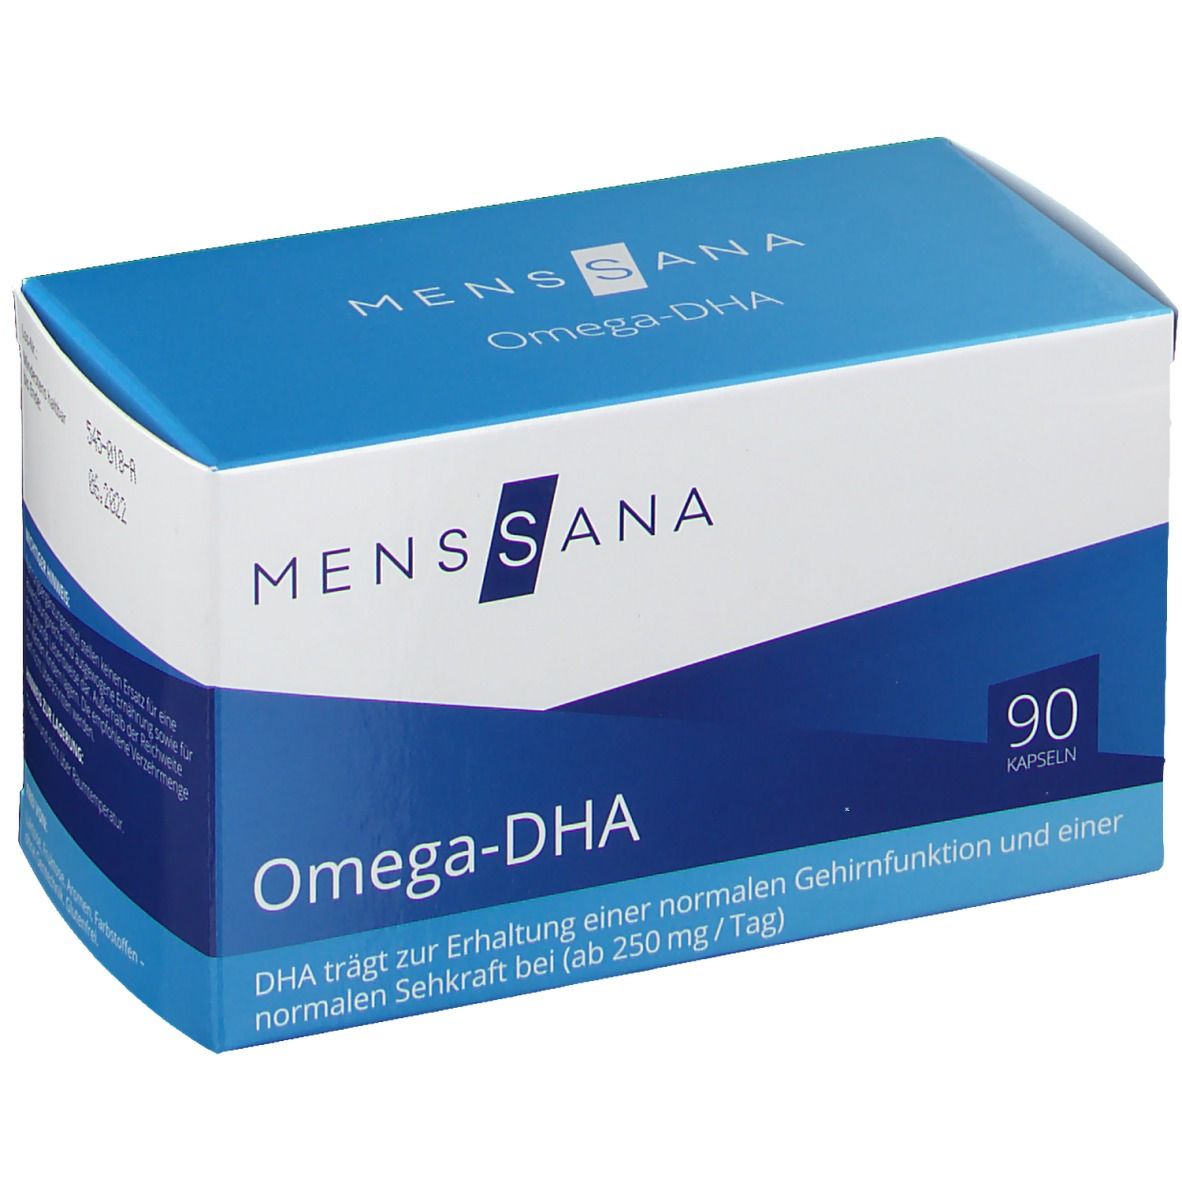 Image of MensSana Omega-DHA